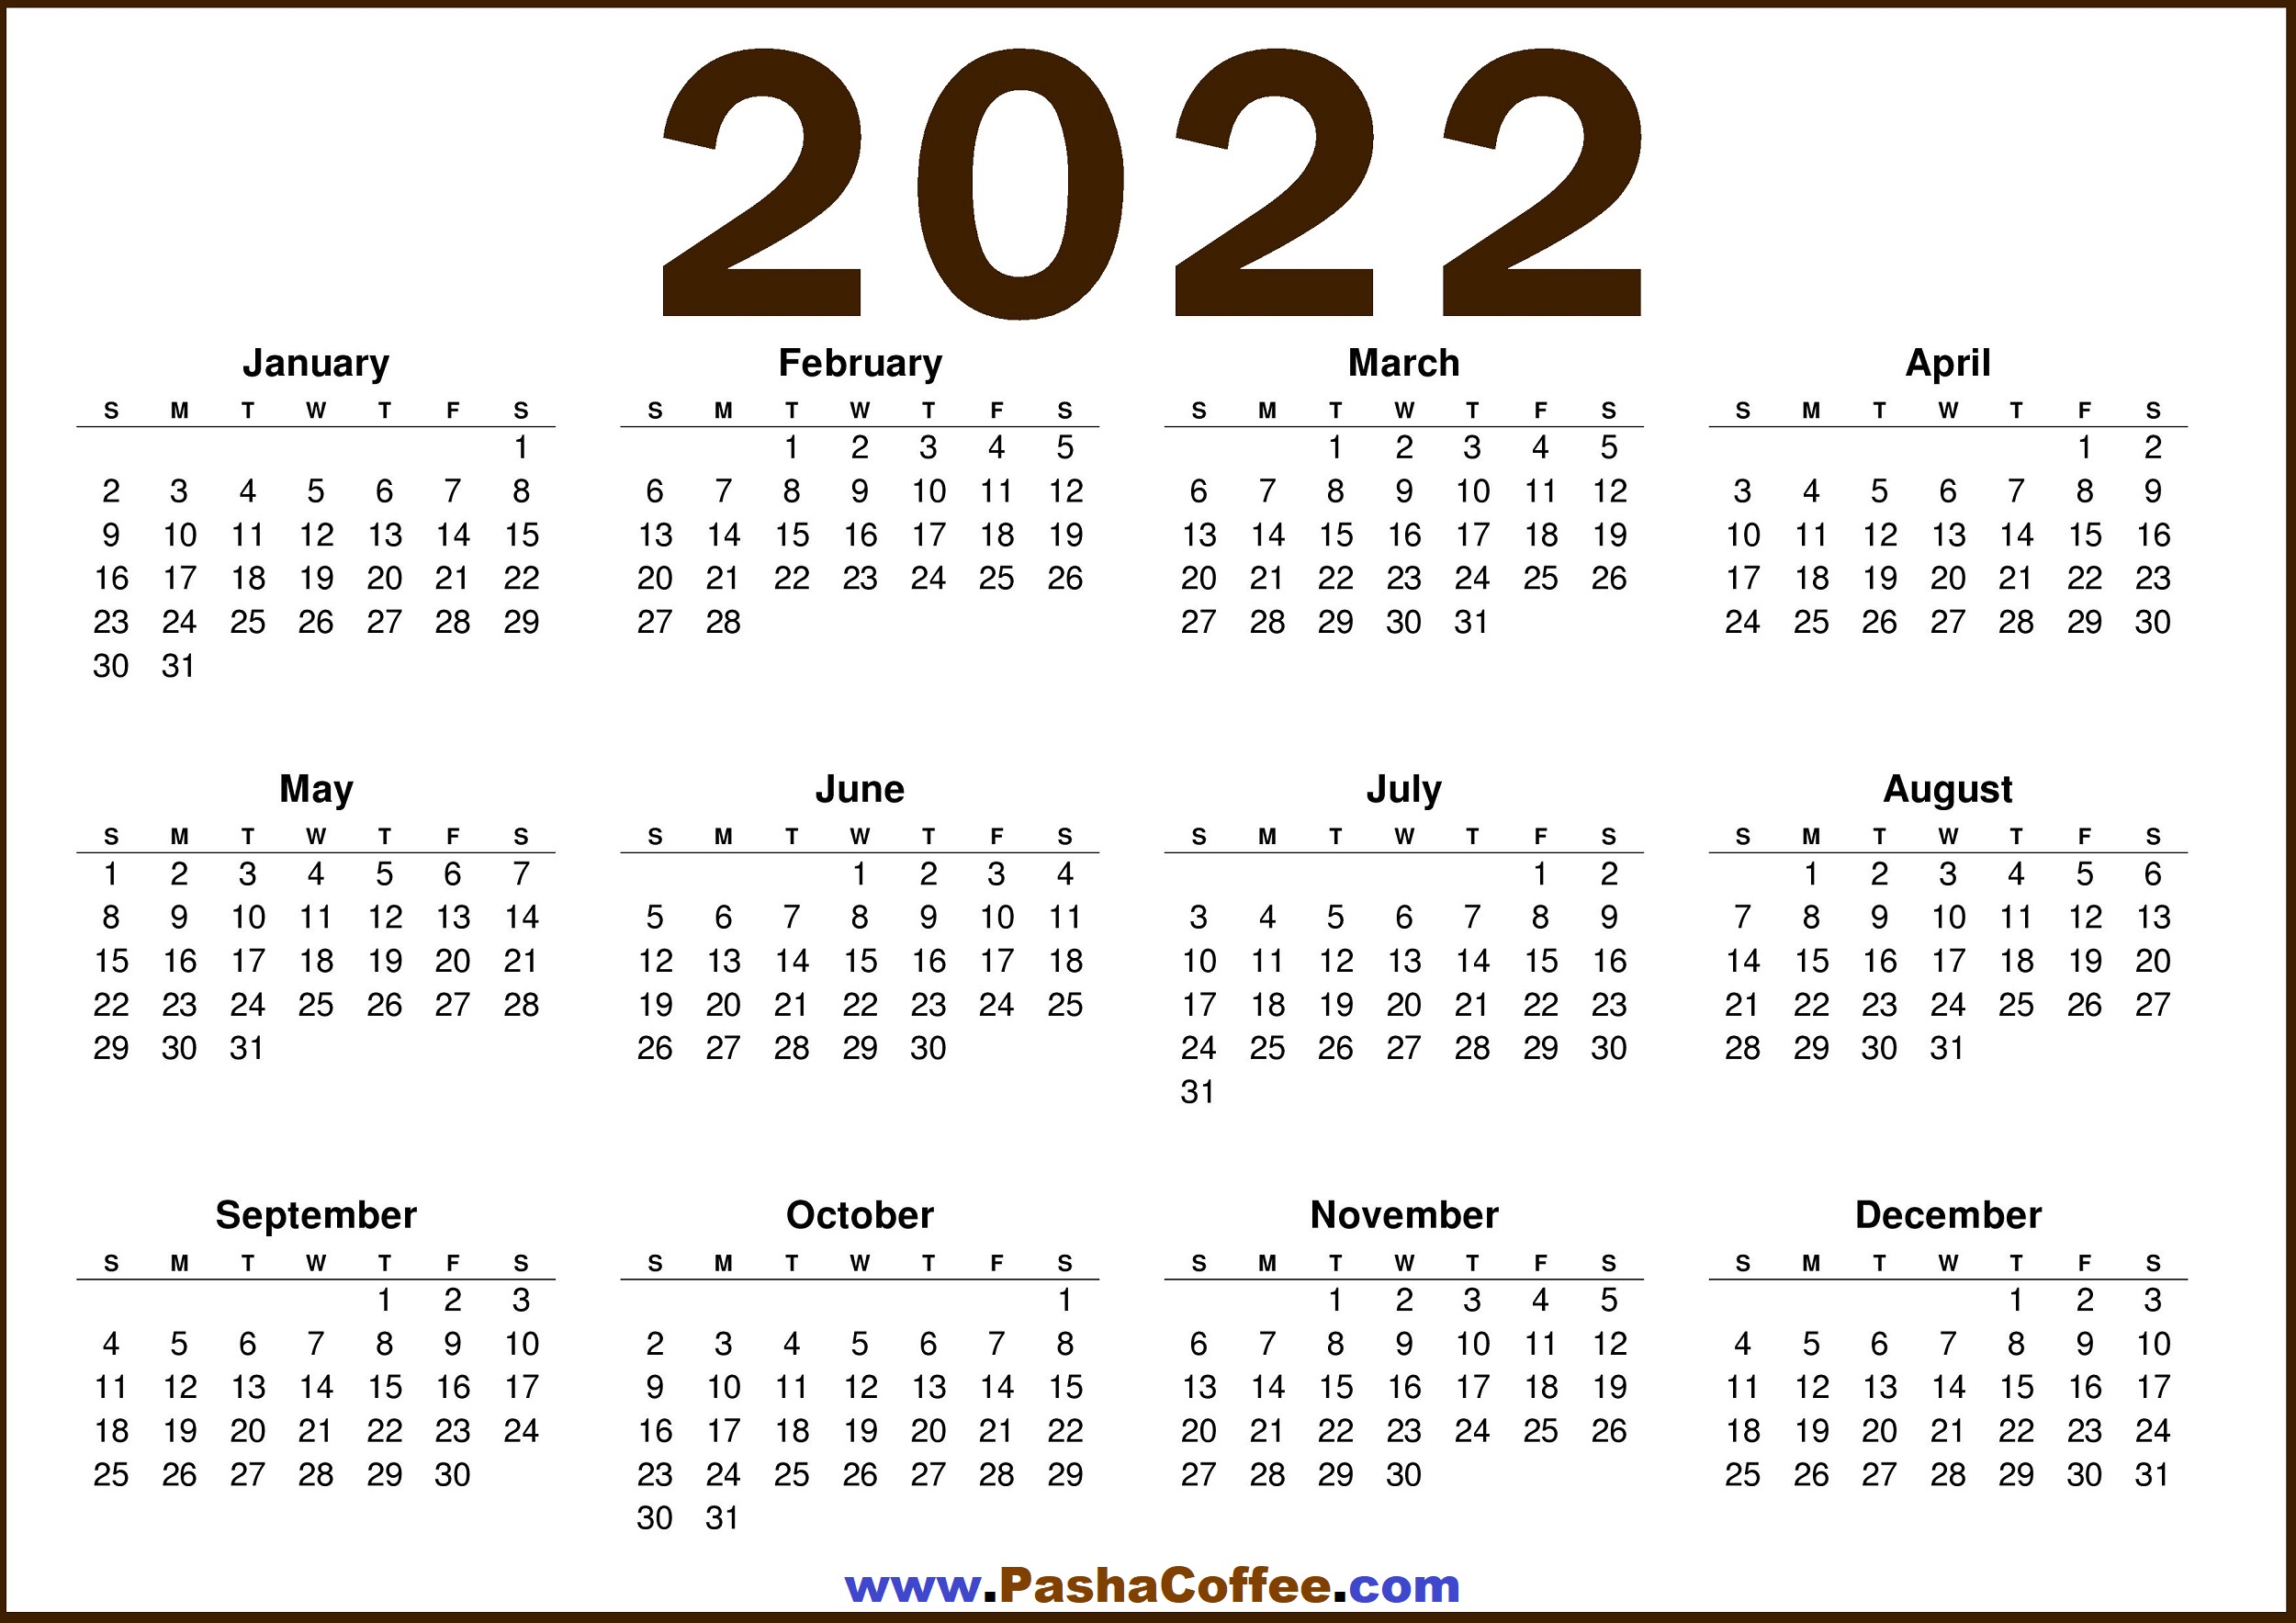 Free 2022 Calendar By Mail 2022 Calendar Us – Free Printable 2022 Calendar – Pashacoffee.com